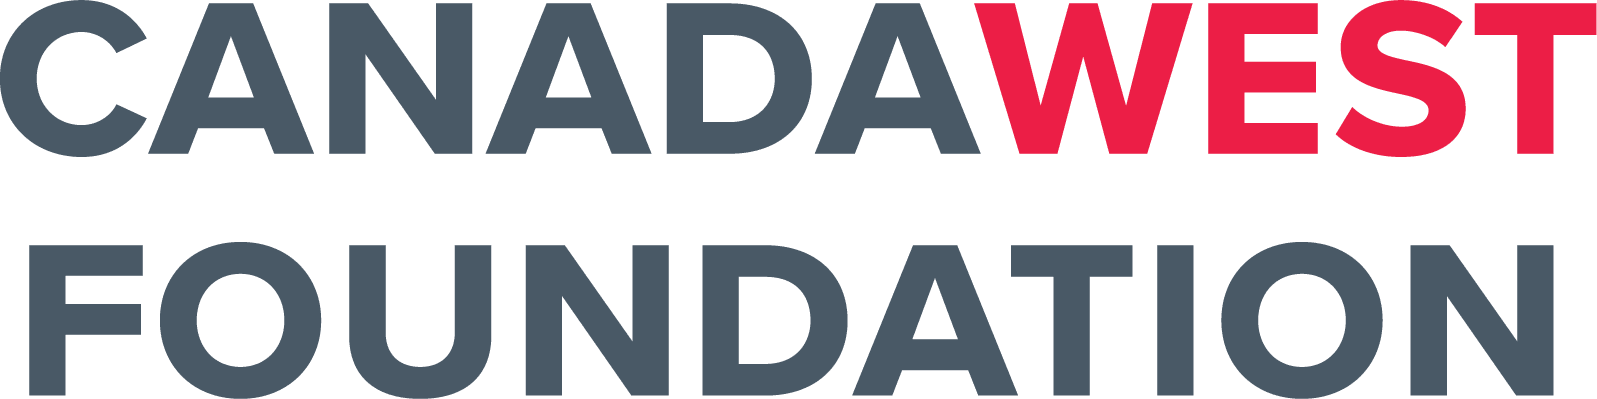 CanadaWestFoundation_Logo_RGB